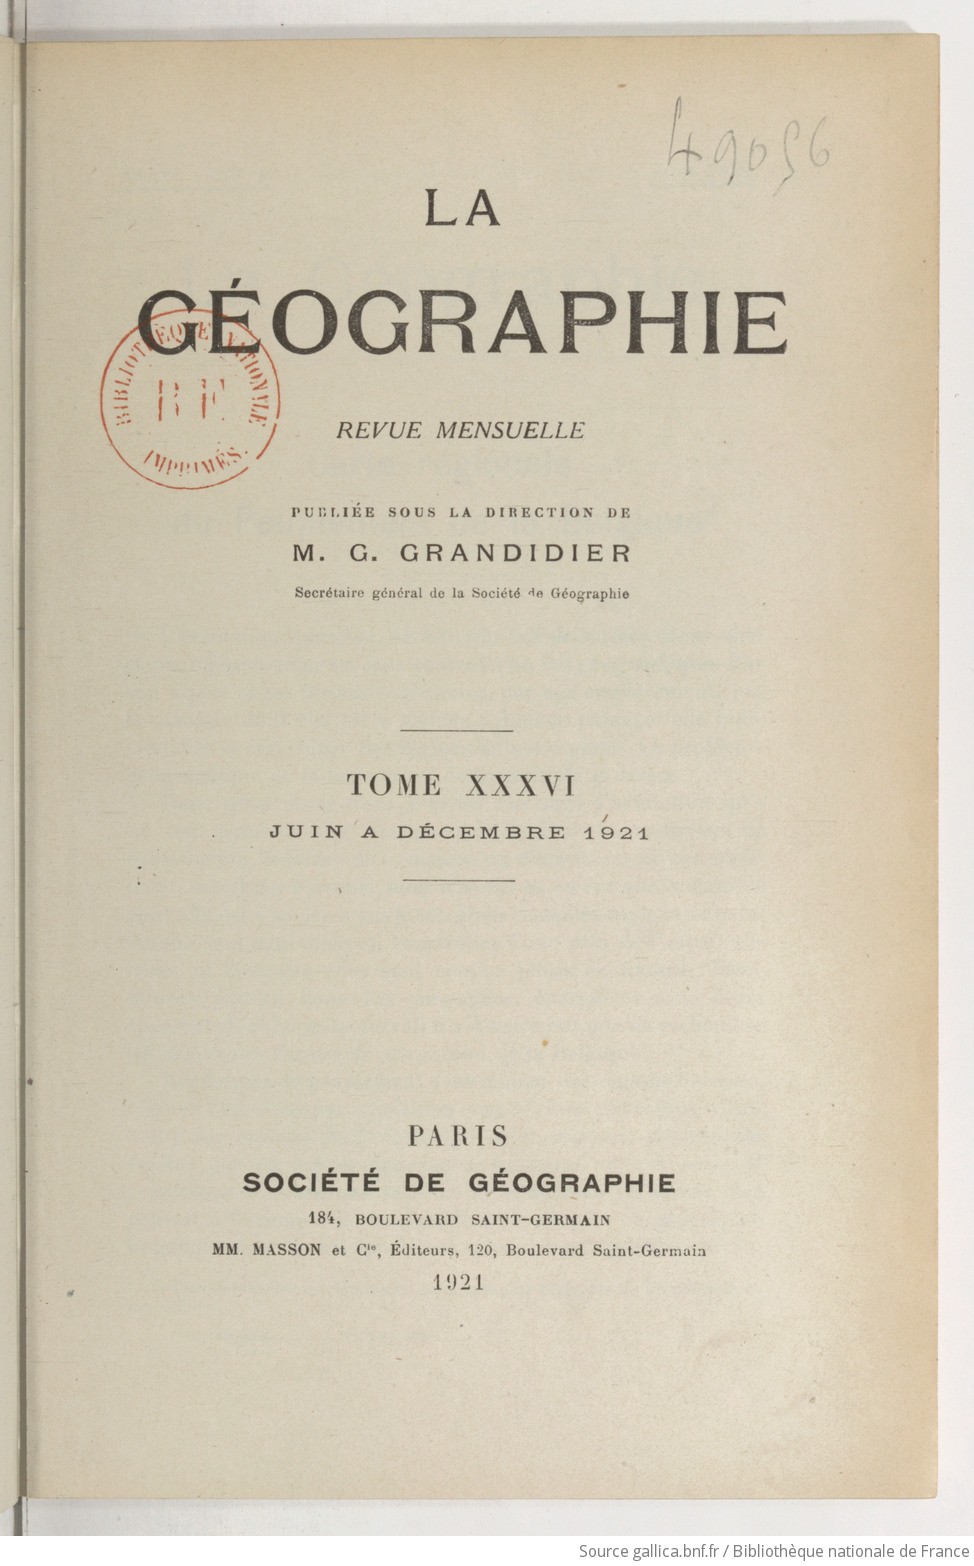 La Géographie : bulletin de la Société de géographie / publié par le baron Hulot,... et Charles Rabot,...